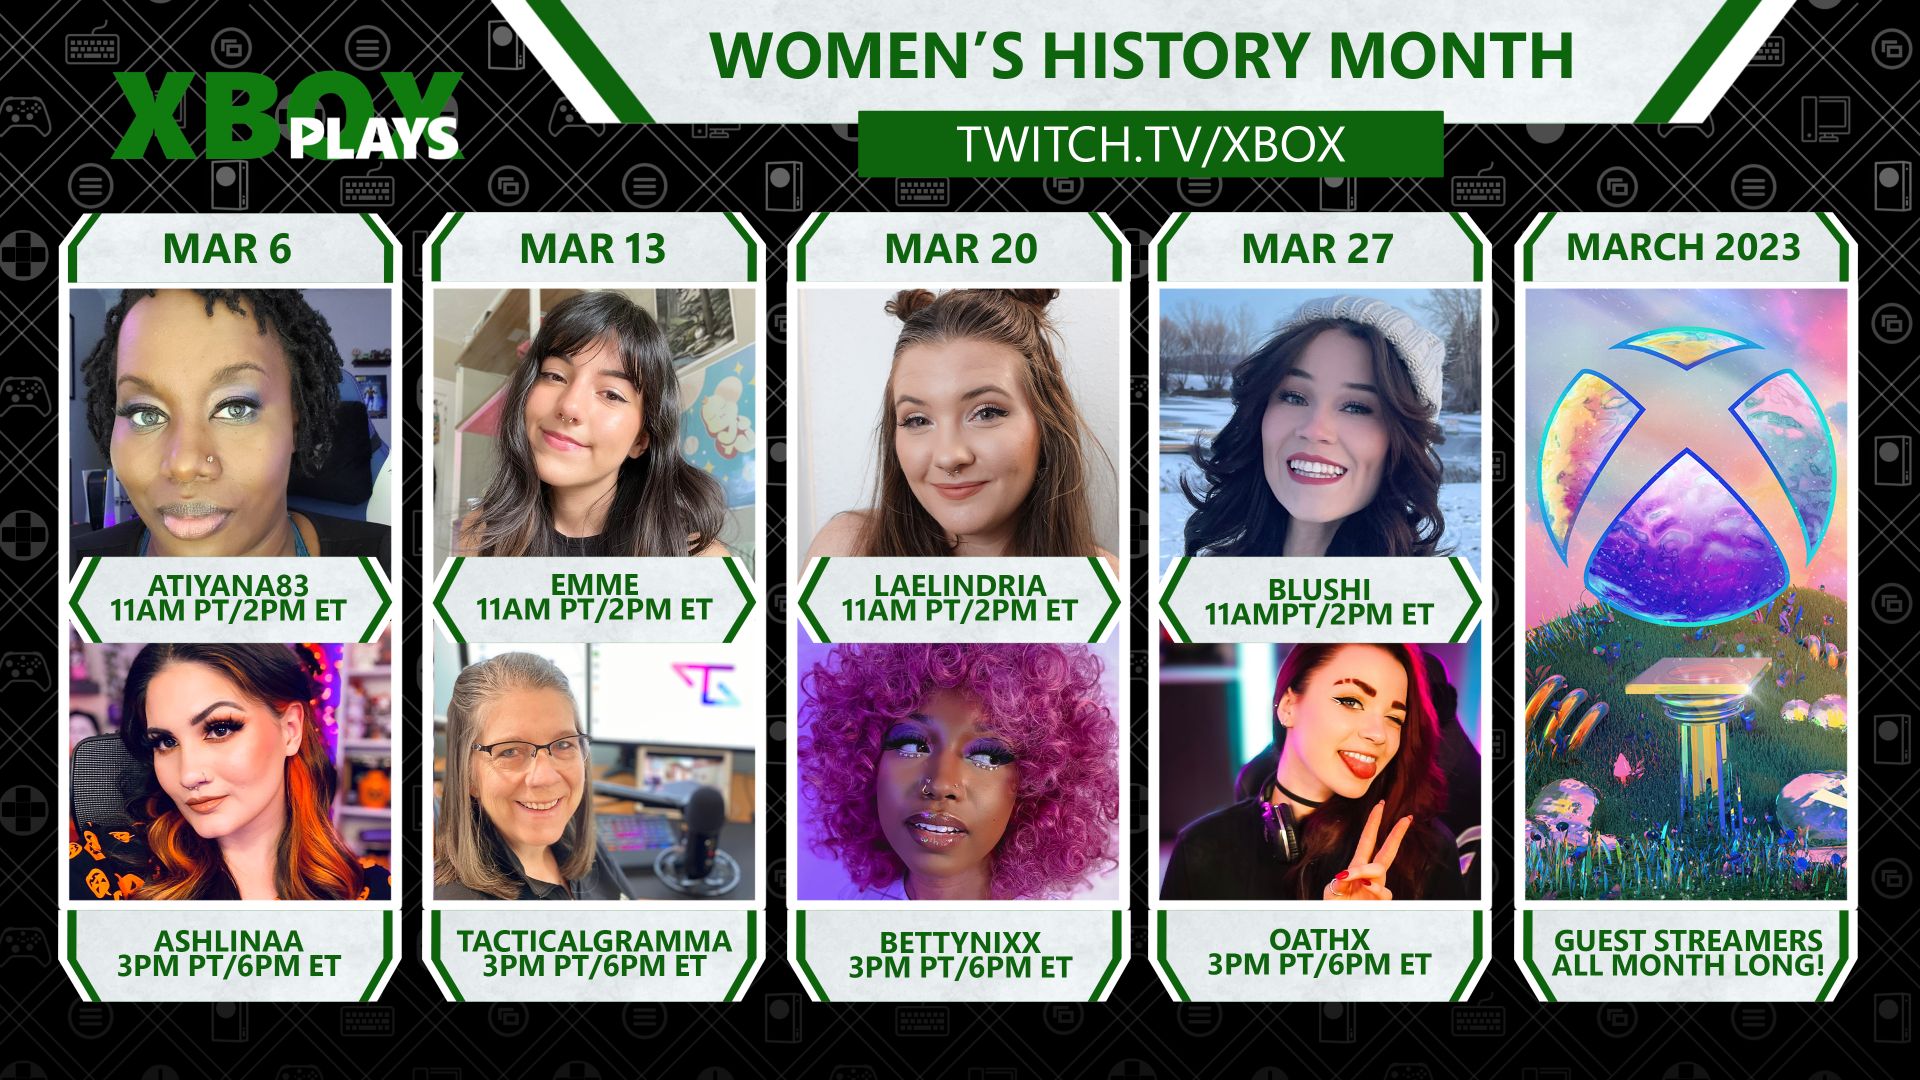 تصویری تلفیقی شامل هشت گیمر زن در Xbox Plays برای ماه تاریخ زنان در twitch.tv/xbox.